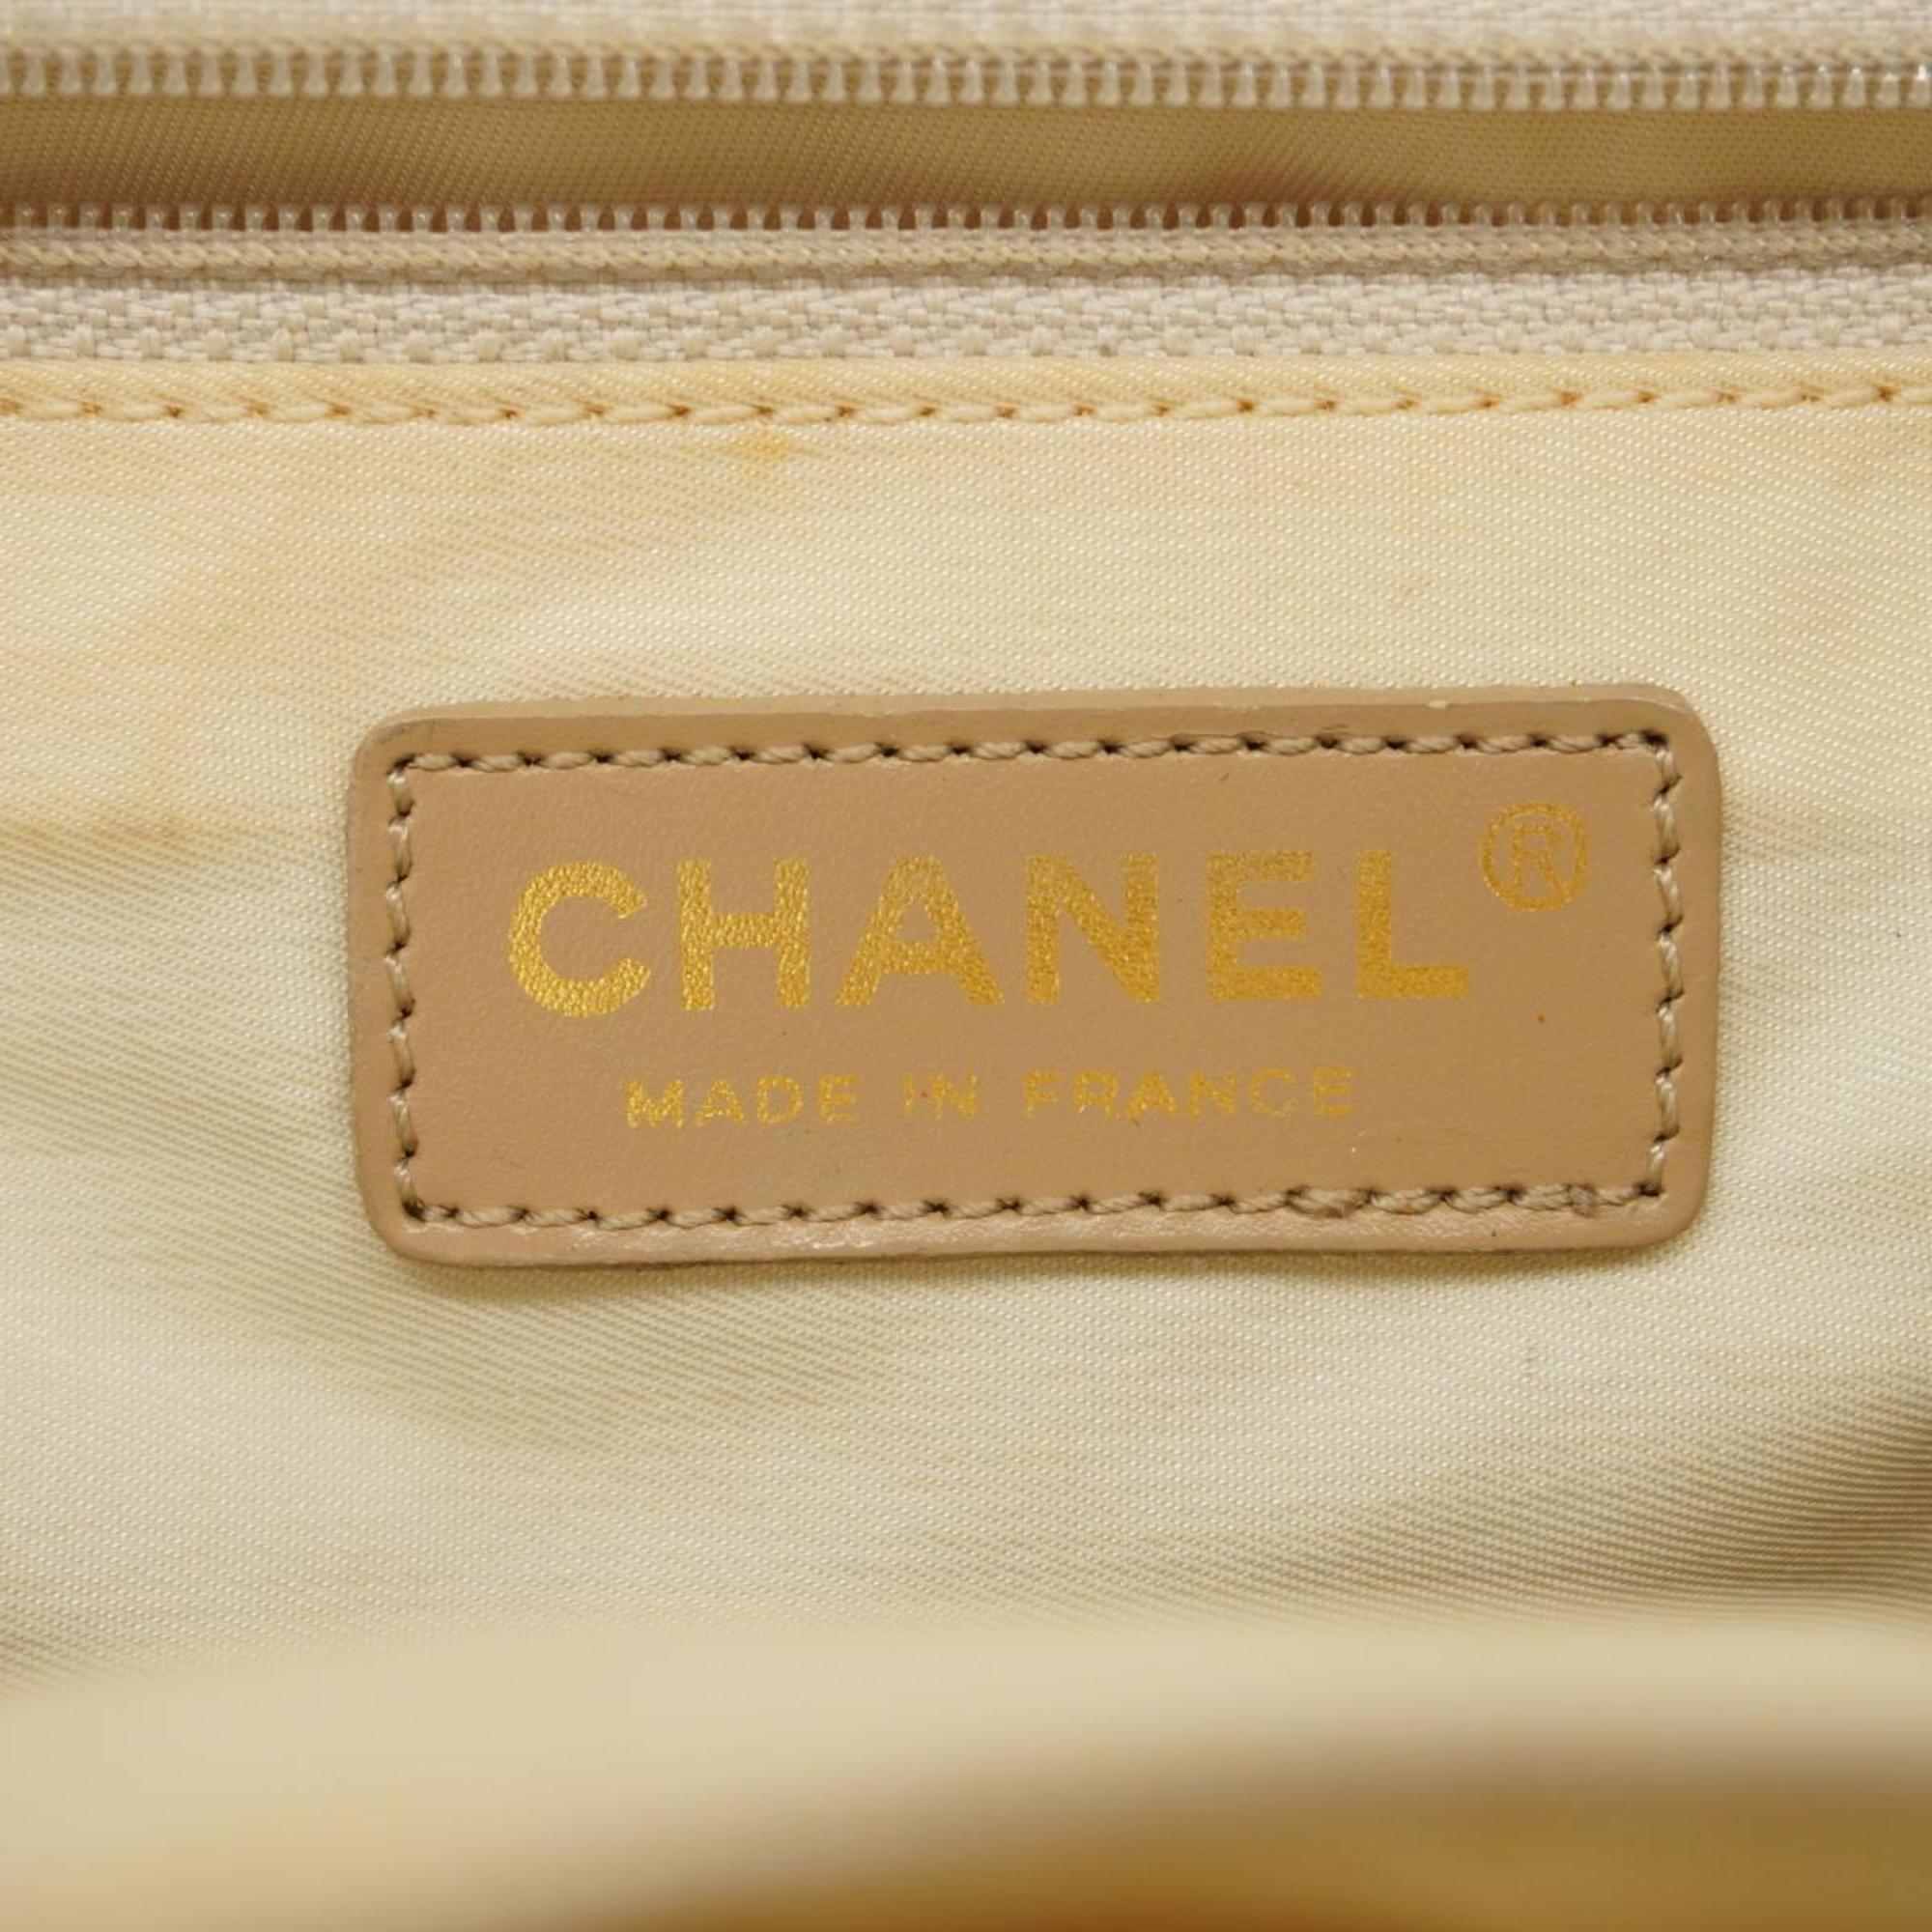 シャネル(Chanel) シャネル トートバッグ ニュートラベル ナイロン ベージュ  レディース